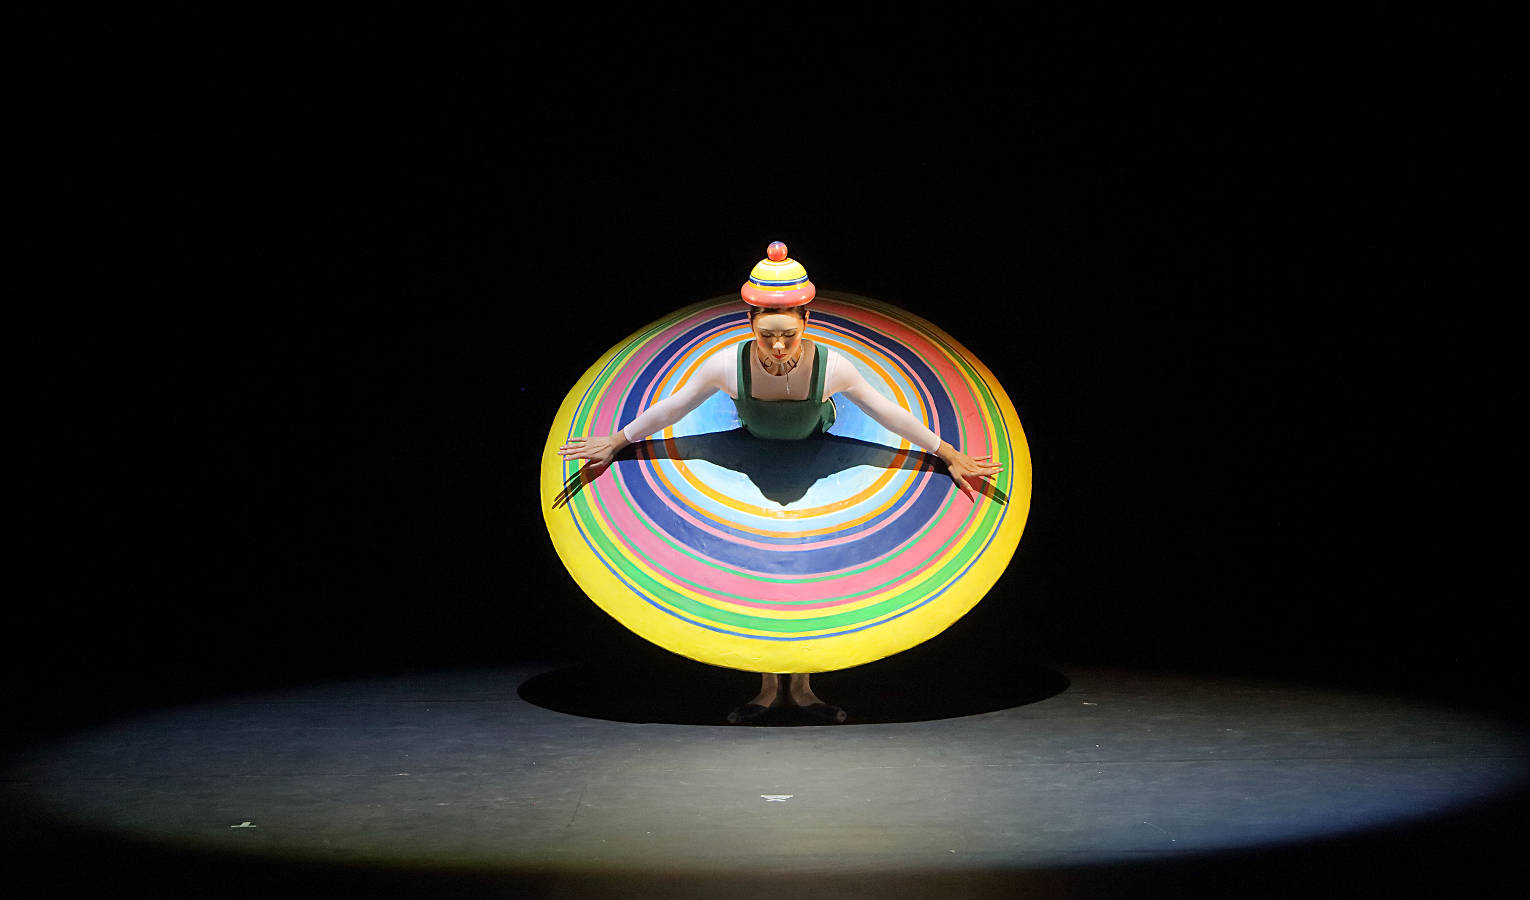 Kobieta w okrągłej sukni ze wzorem koncentrycznych, kolorowych okręgów